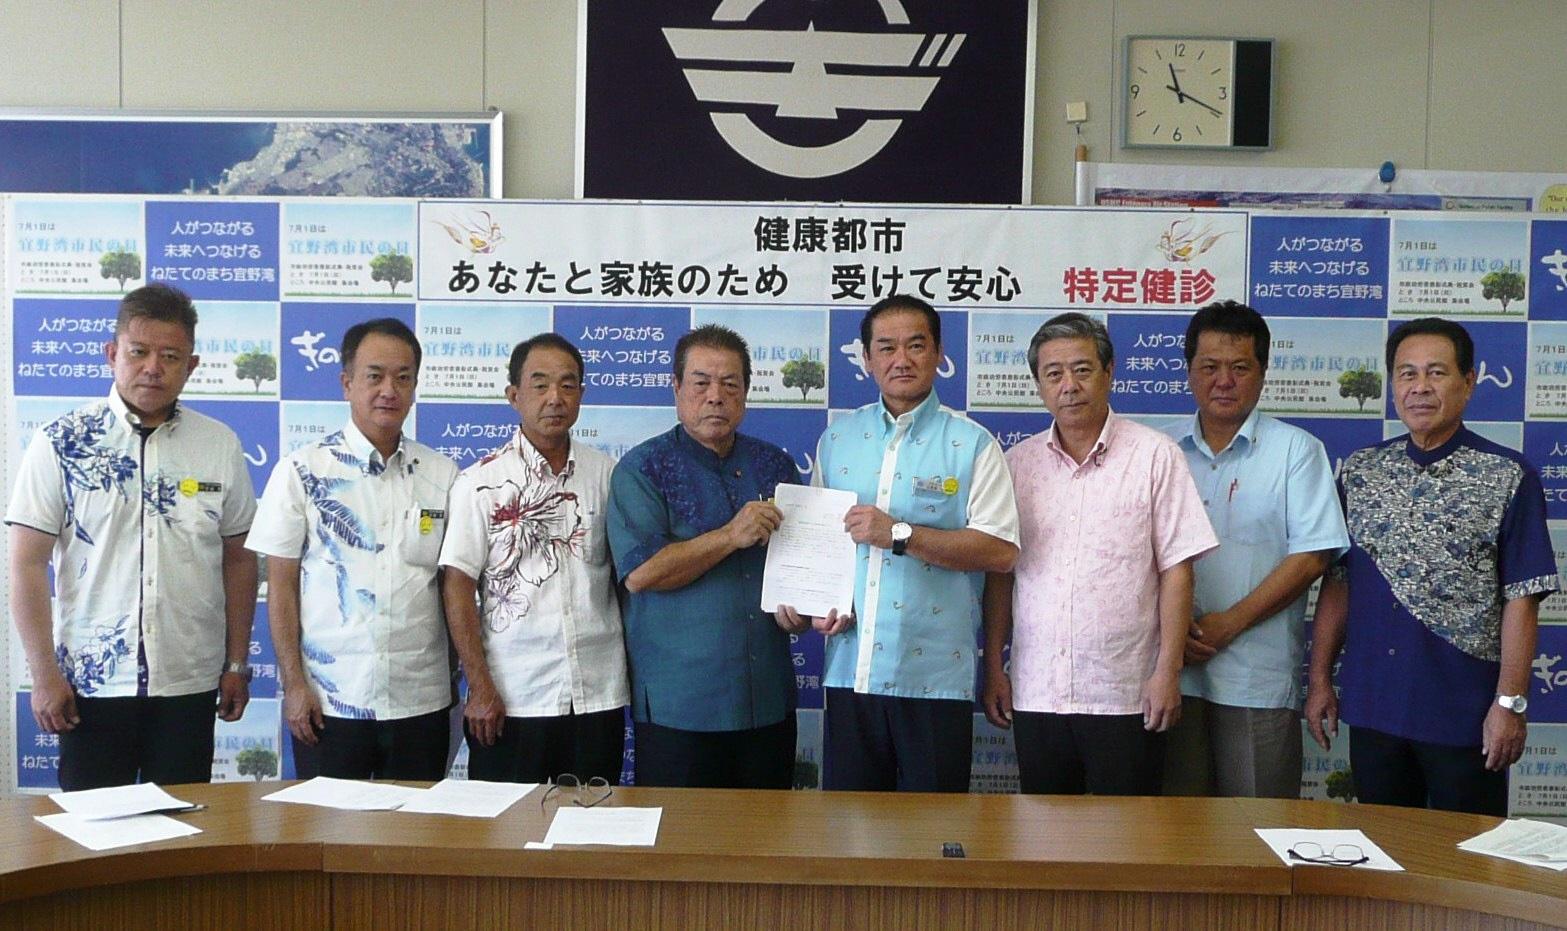 市長と7名の議員さんが提言書を持って並んでいる写真